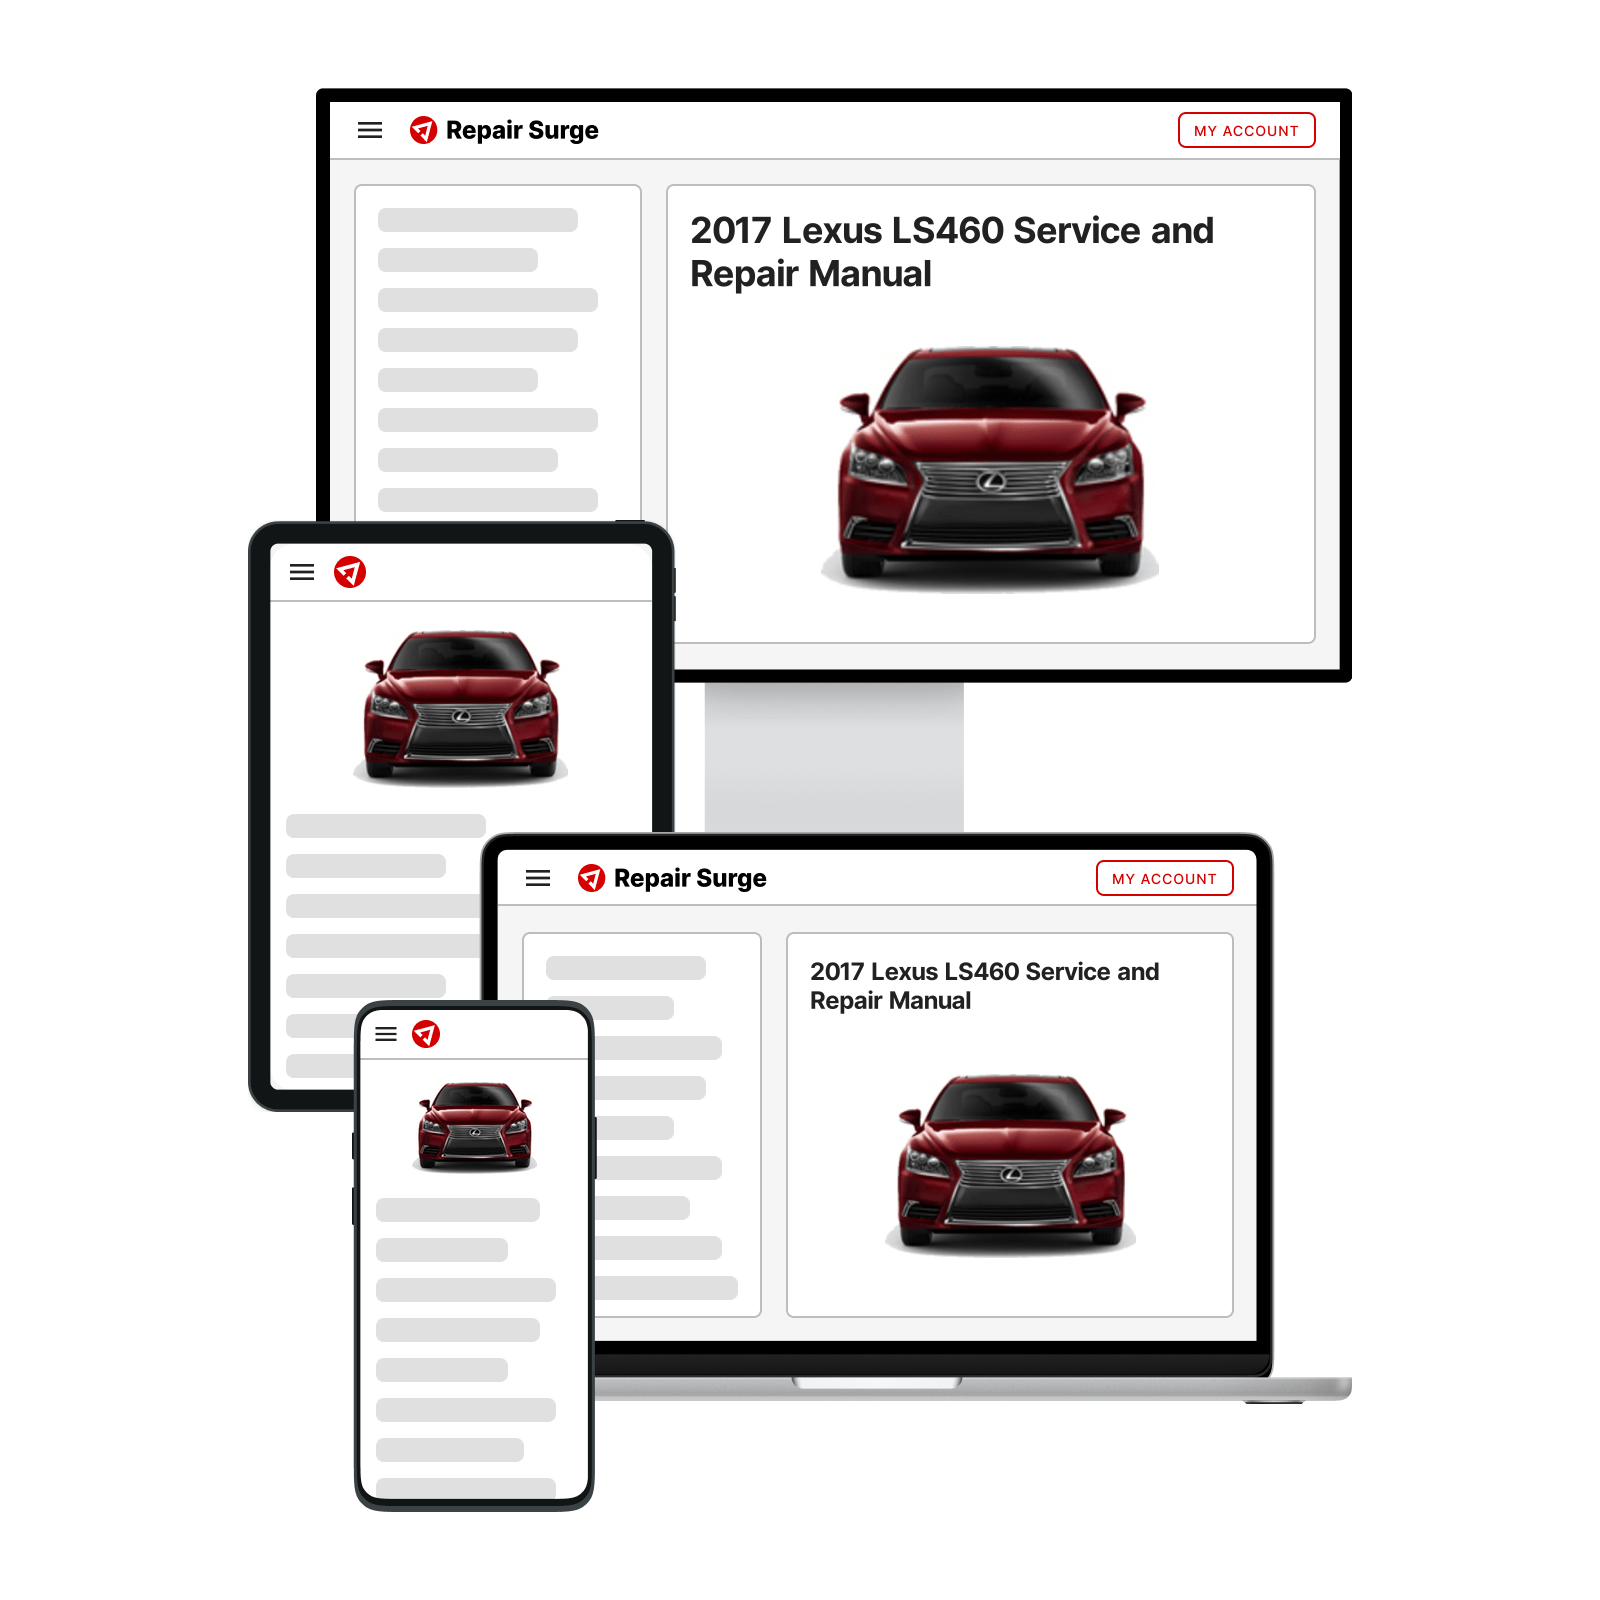 2017 Lexus LS460 service and repair manual hero image